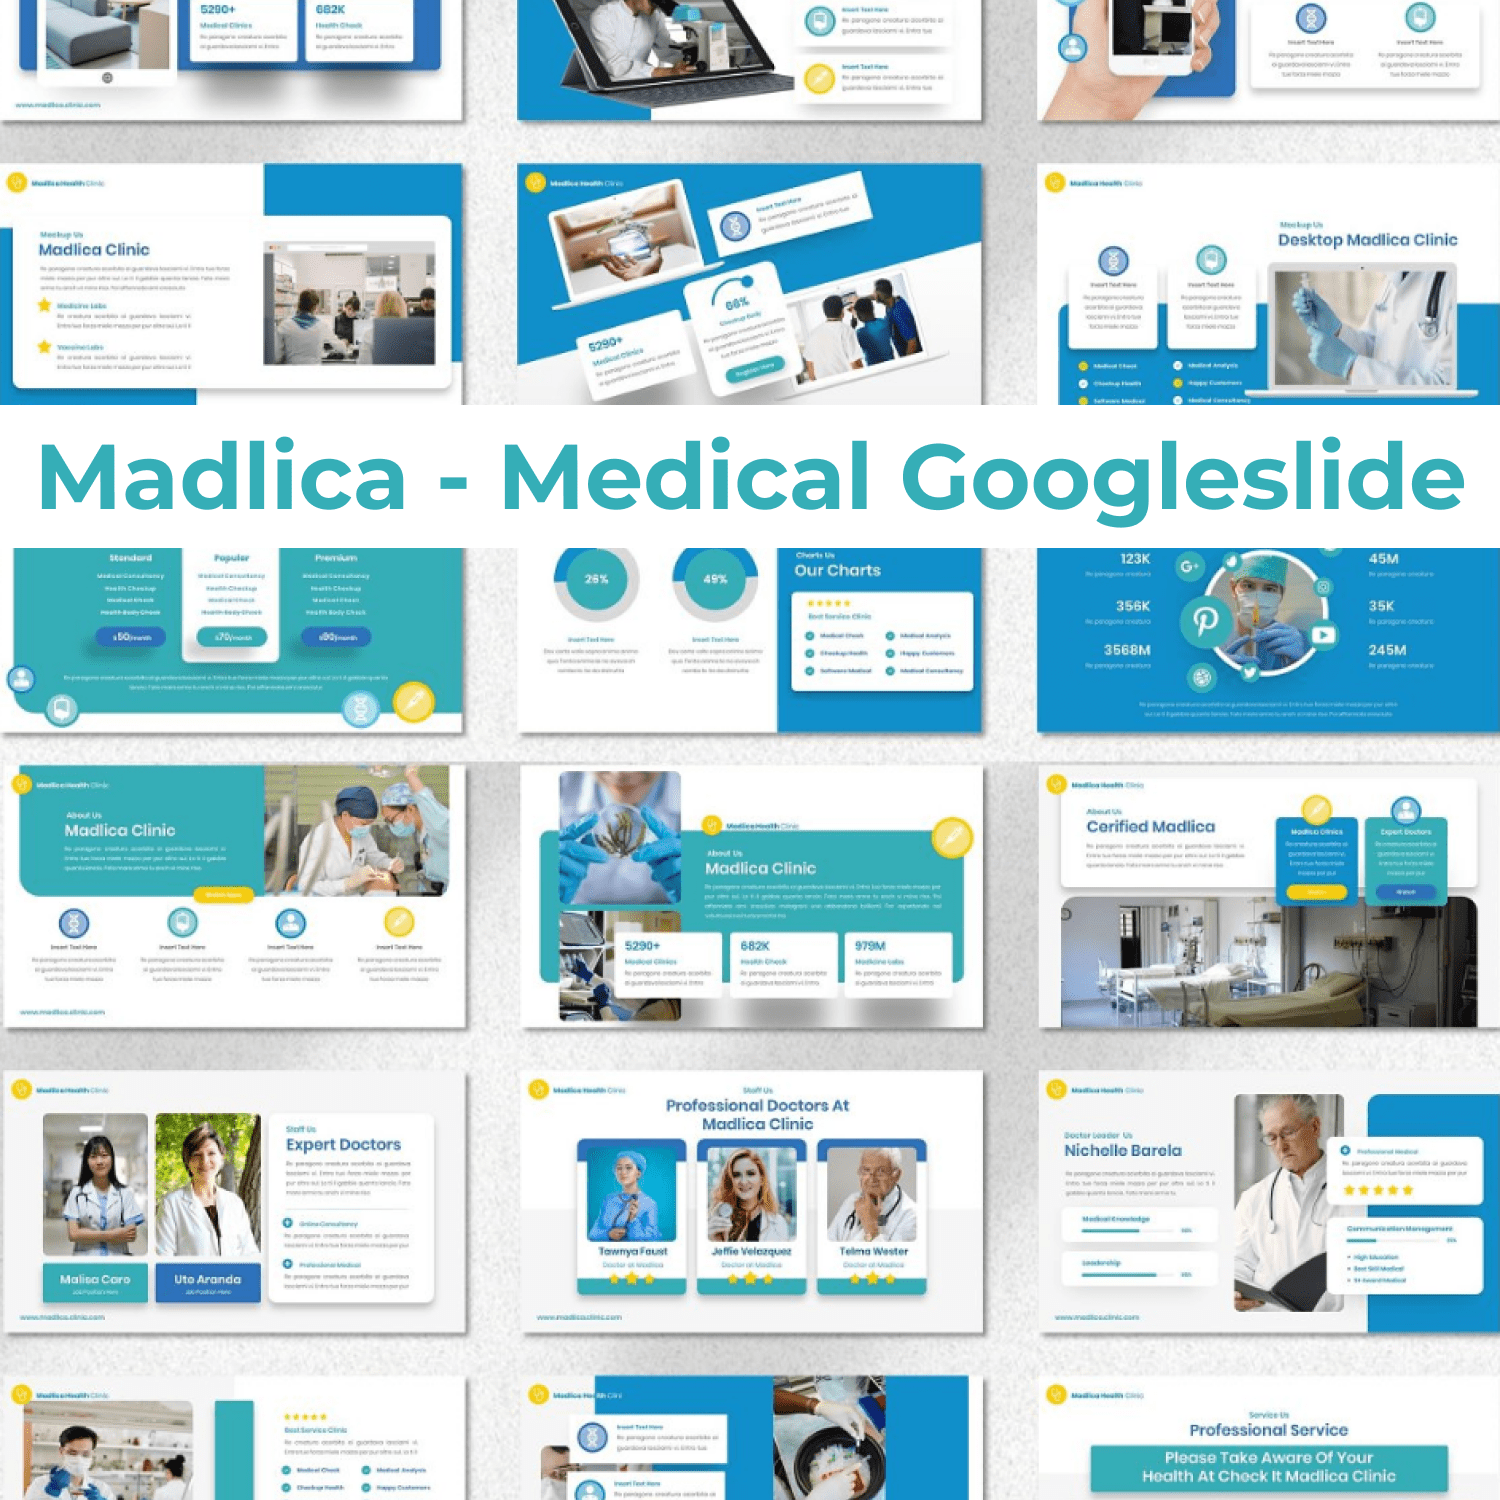 Madlica - Medical Googleslide cover image.